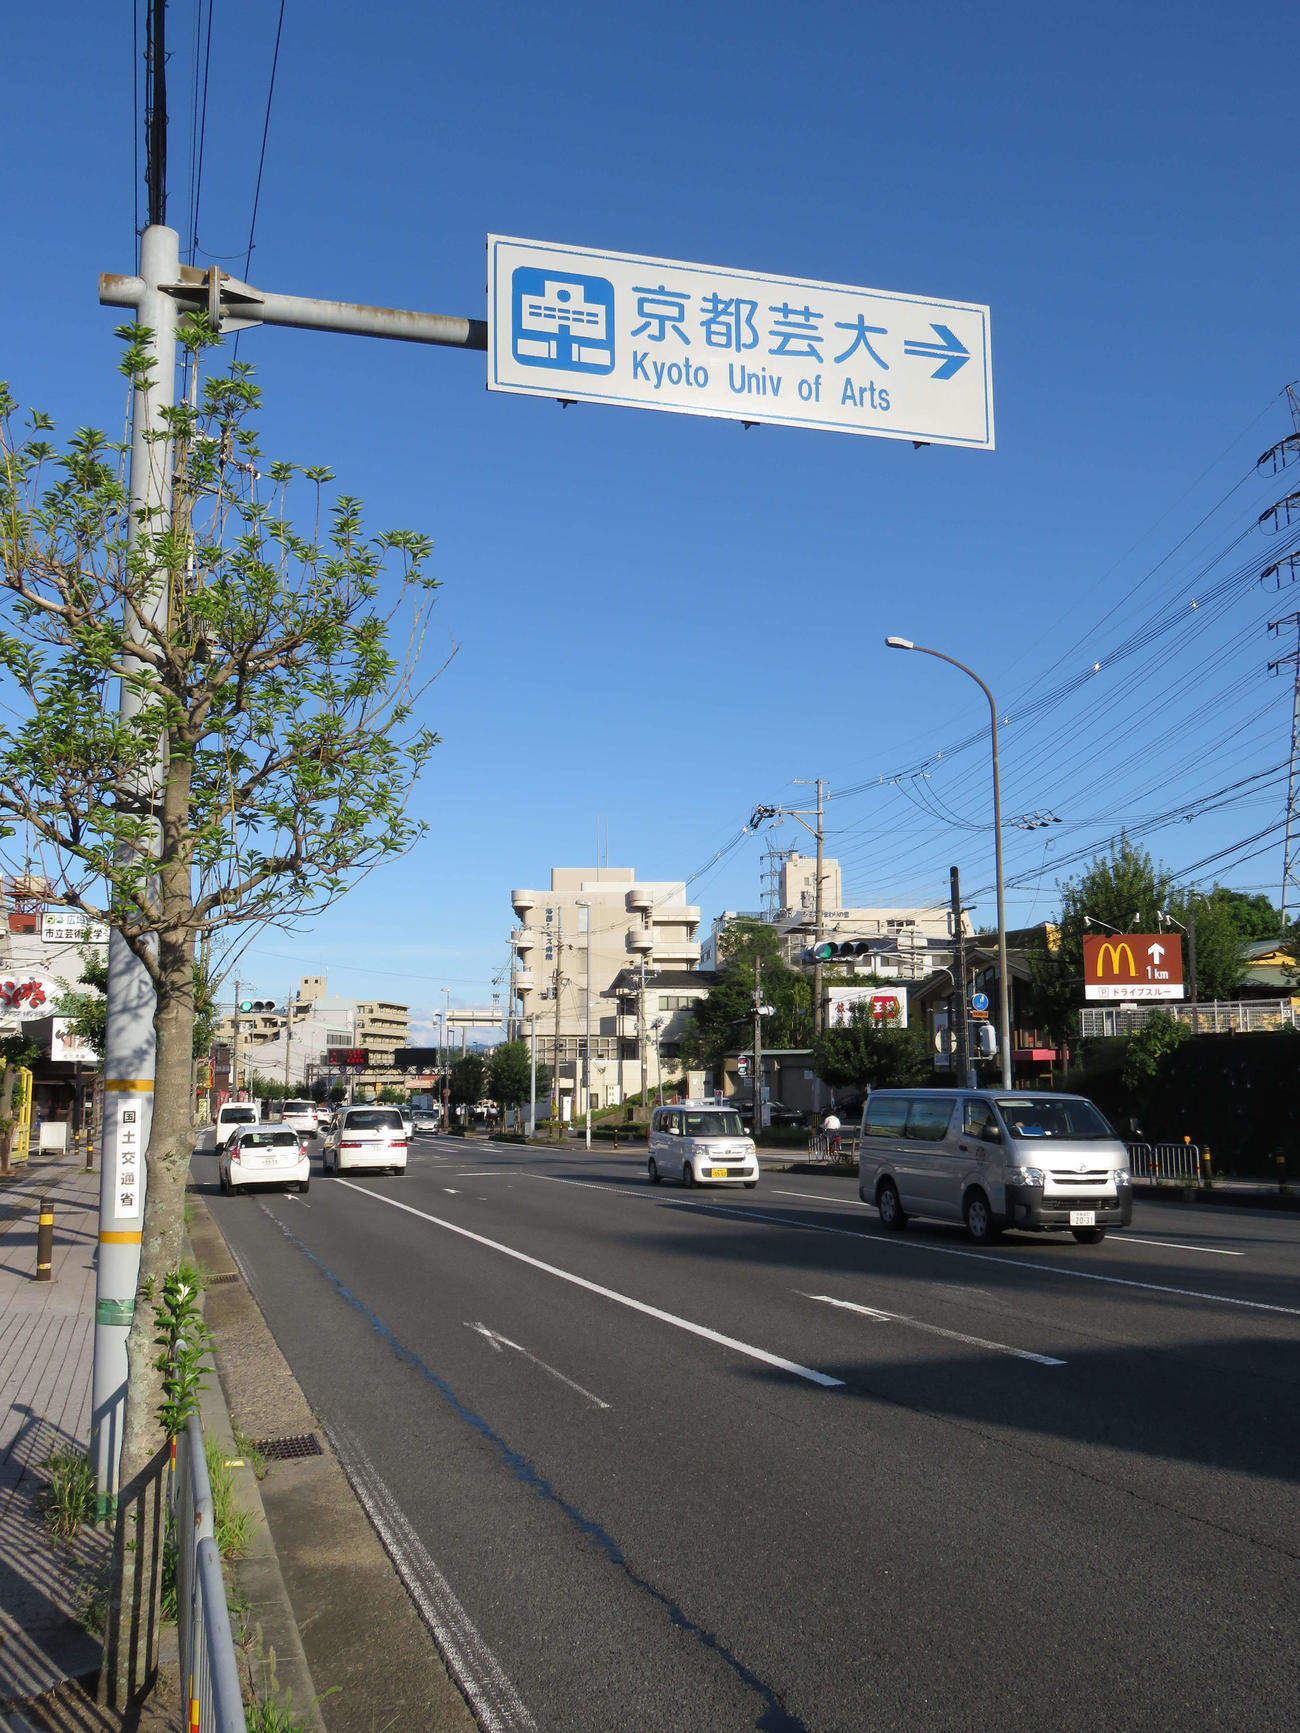 京都市立芸大前の国道9号線には、国土交通省が設置した「京都芸大」の案内標識がある。英文表記は「KyotoUniv.ofArts」